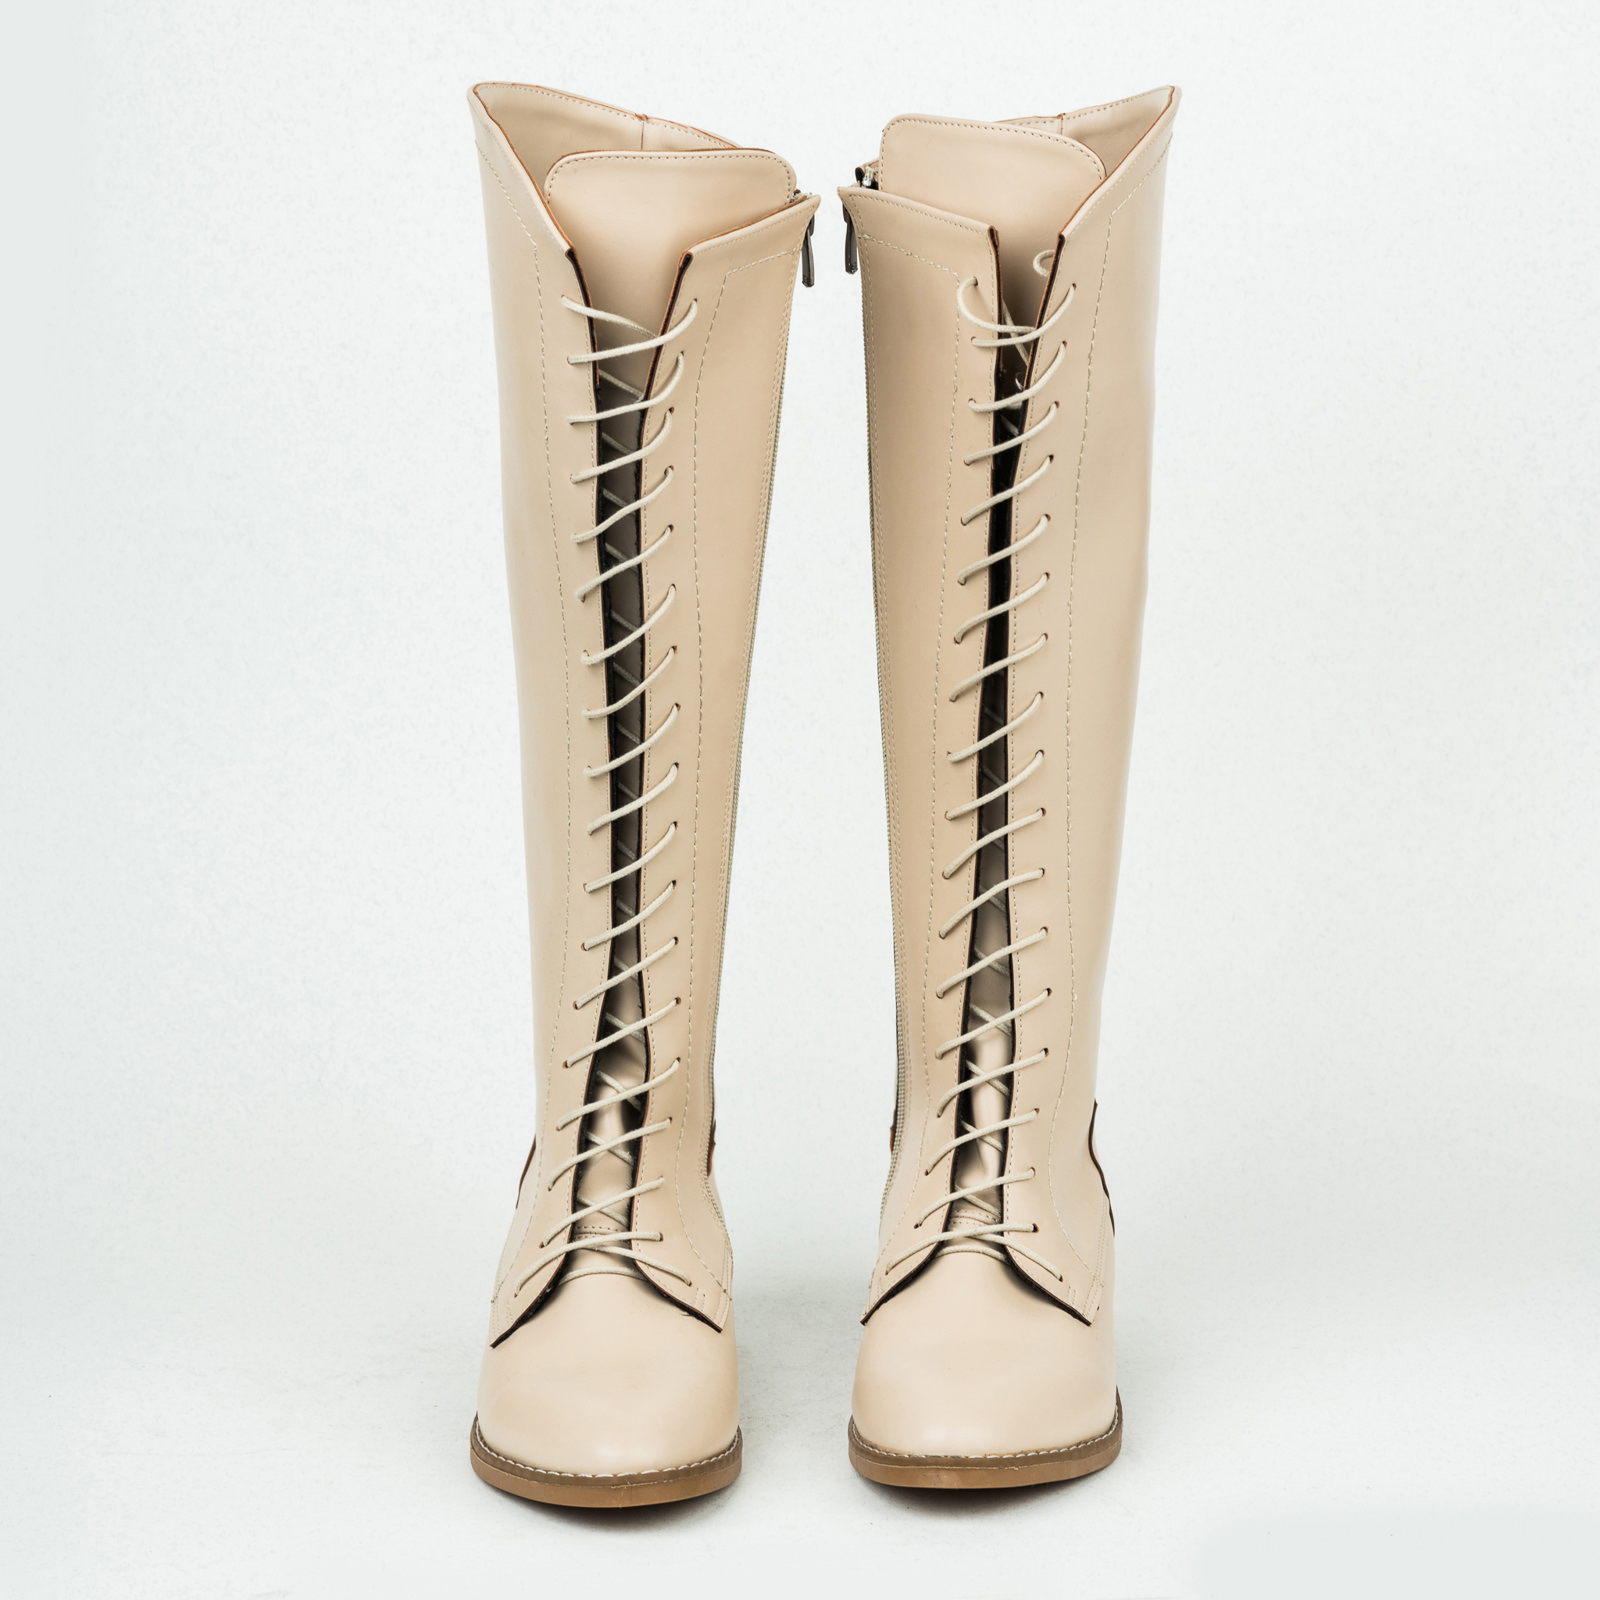 Women boots B141 - LIGHT BEIGE